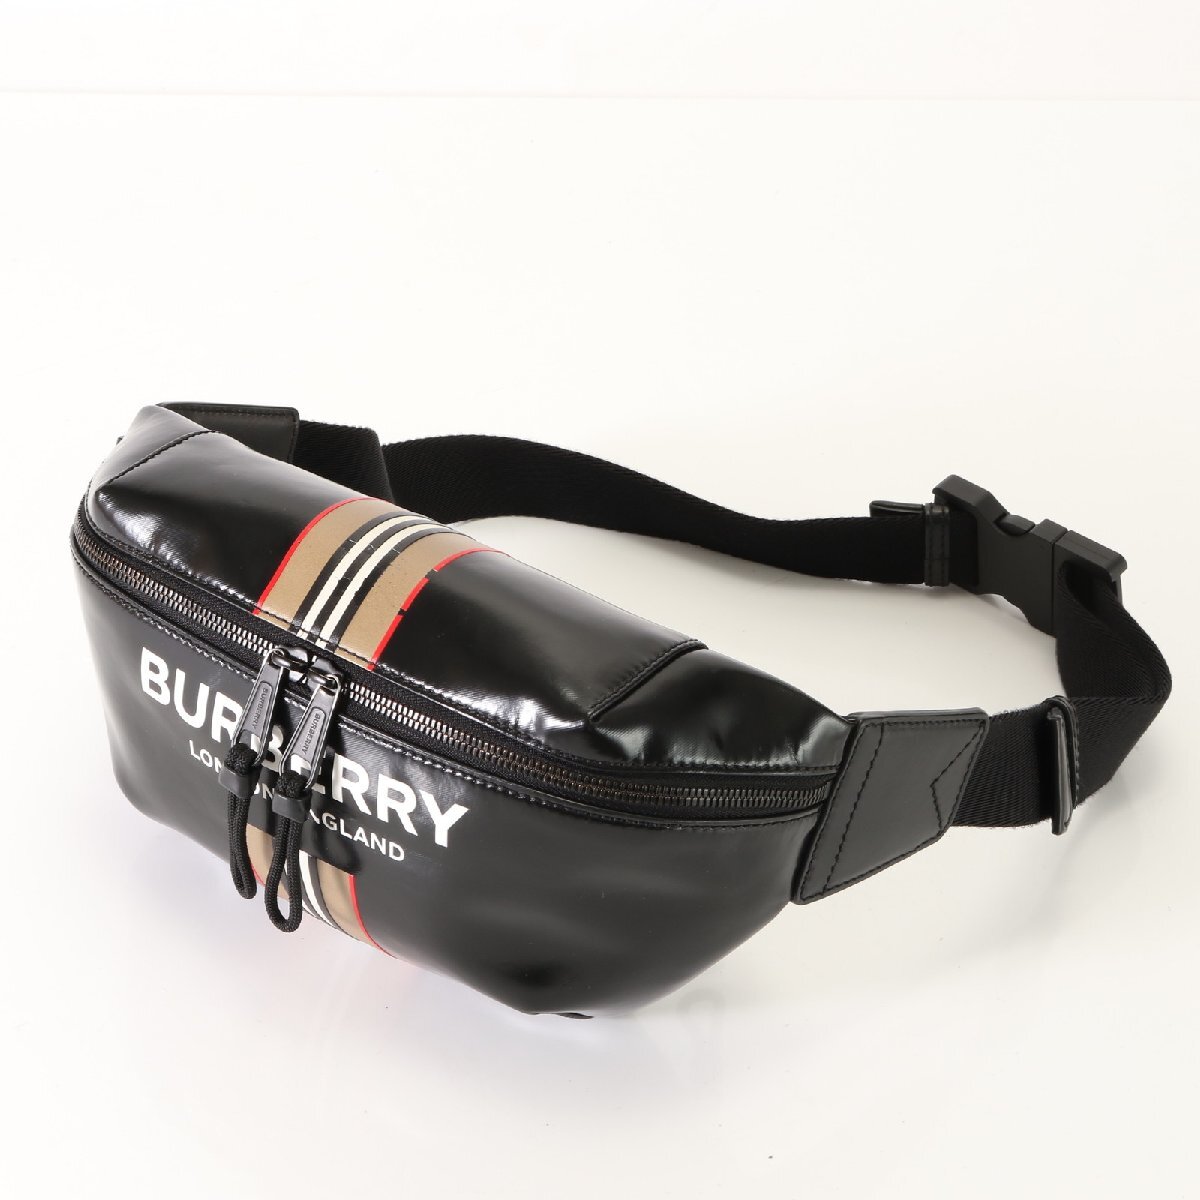 1 иен # прекрасный товар # Burberry # Sony bam сумка # полоса #2WAY сумка-пояс плечо сумка "body" кожа мужской AET 0829-T23